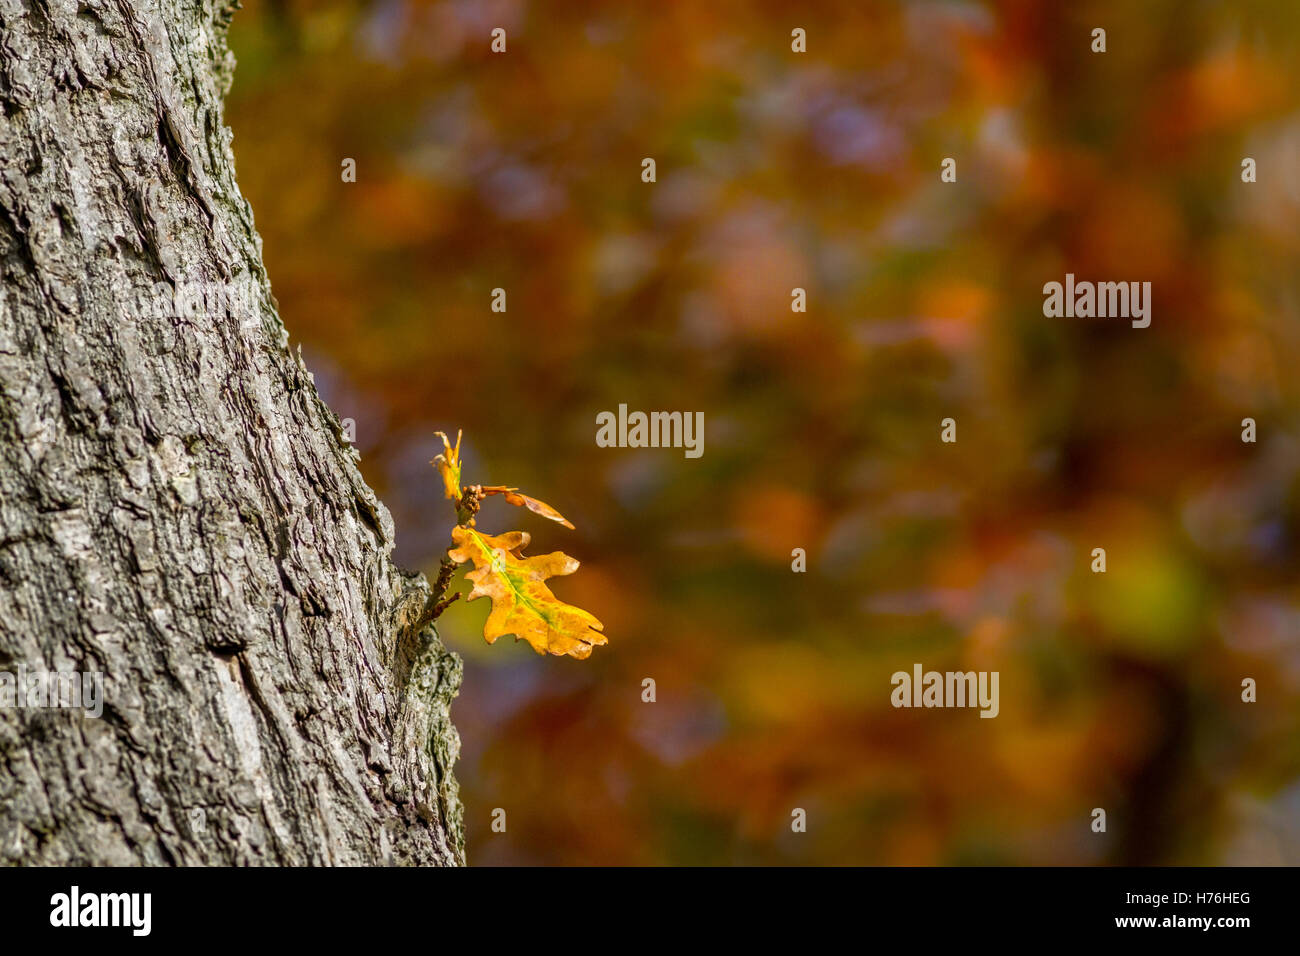 Isolated oak leaf changing colour in autumn sunshine, Yorkshire, UK Stock Photo